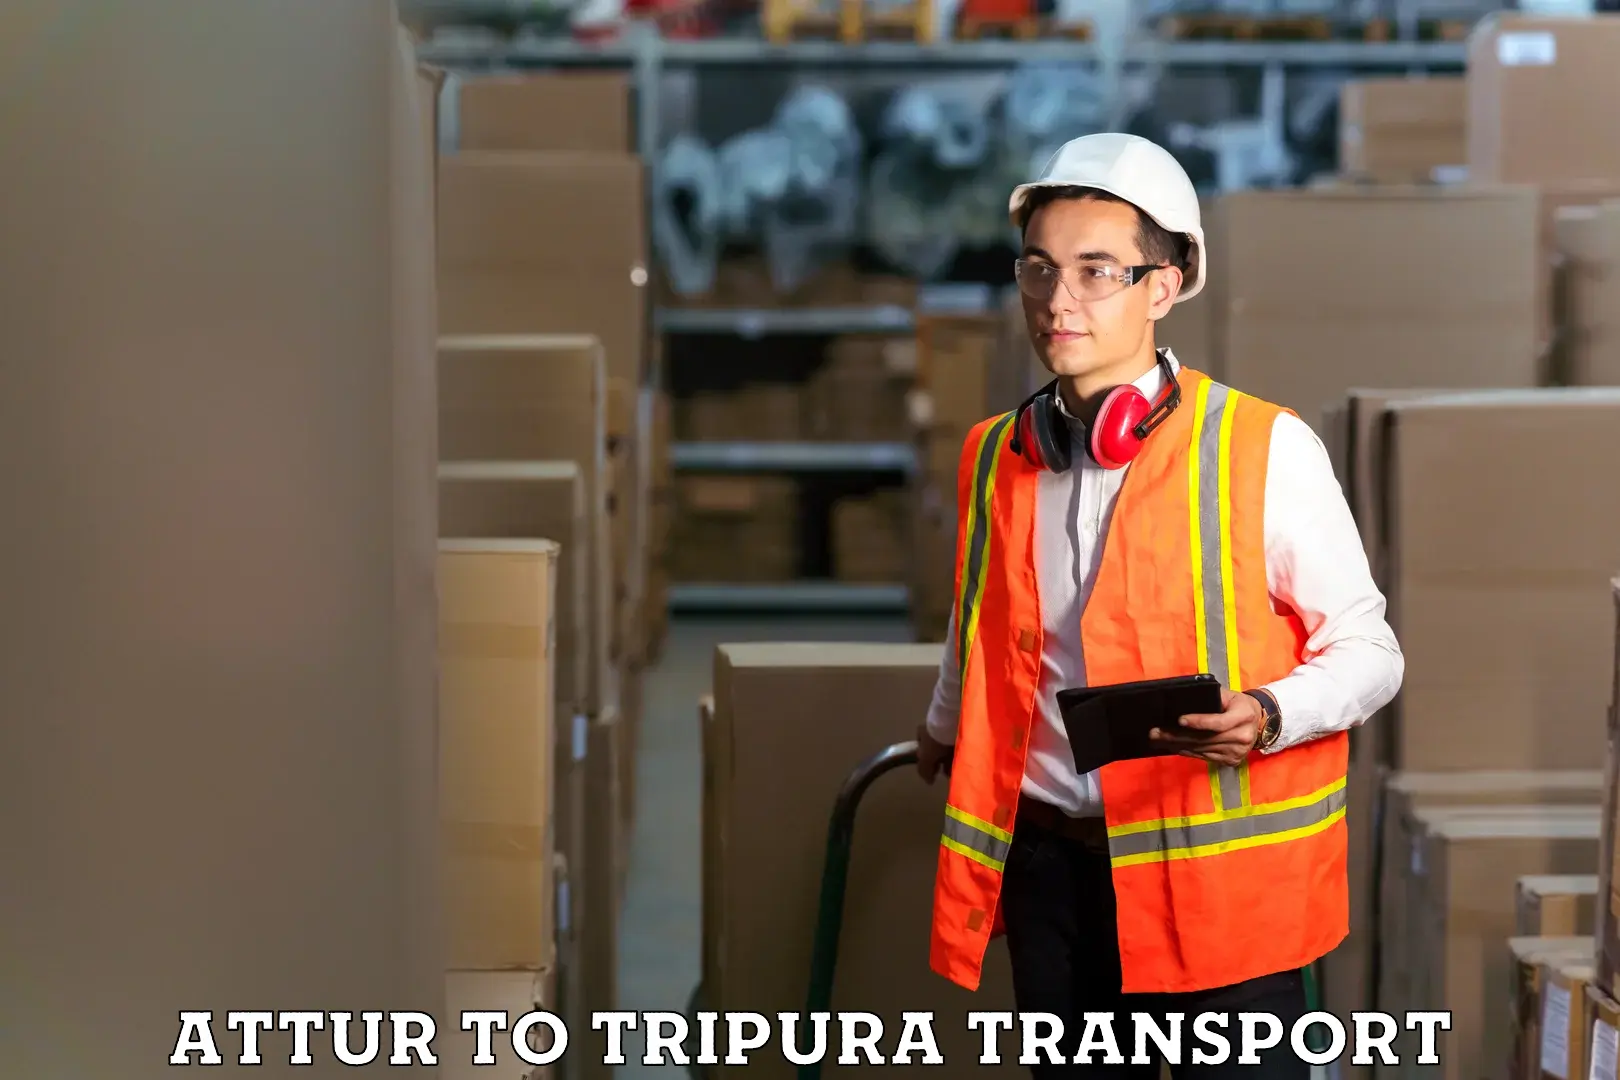 Vehicle transport services Attur to IIIT Agartala